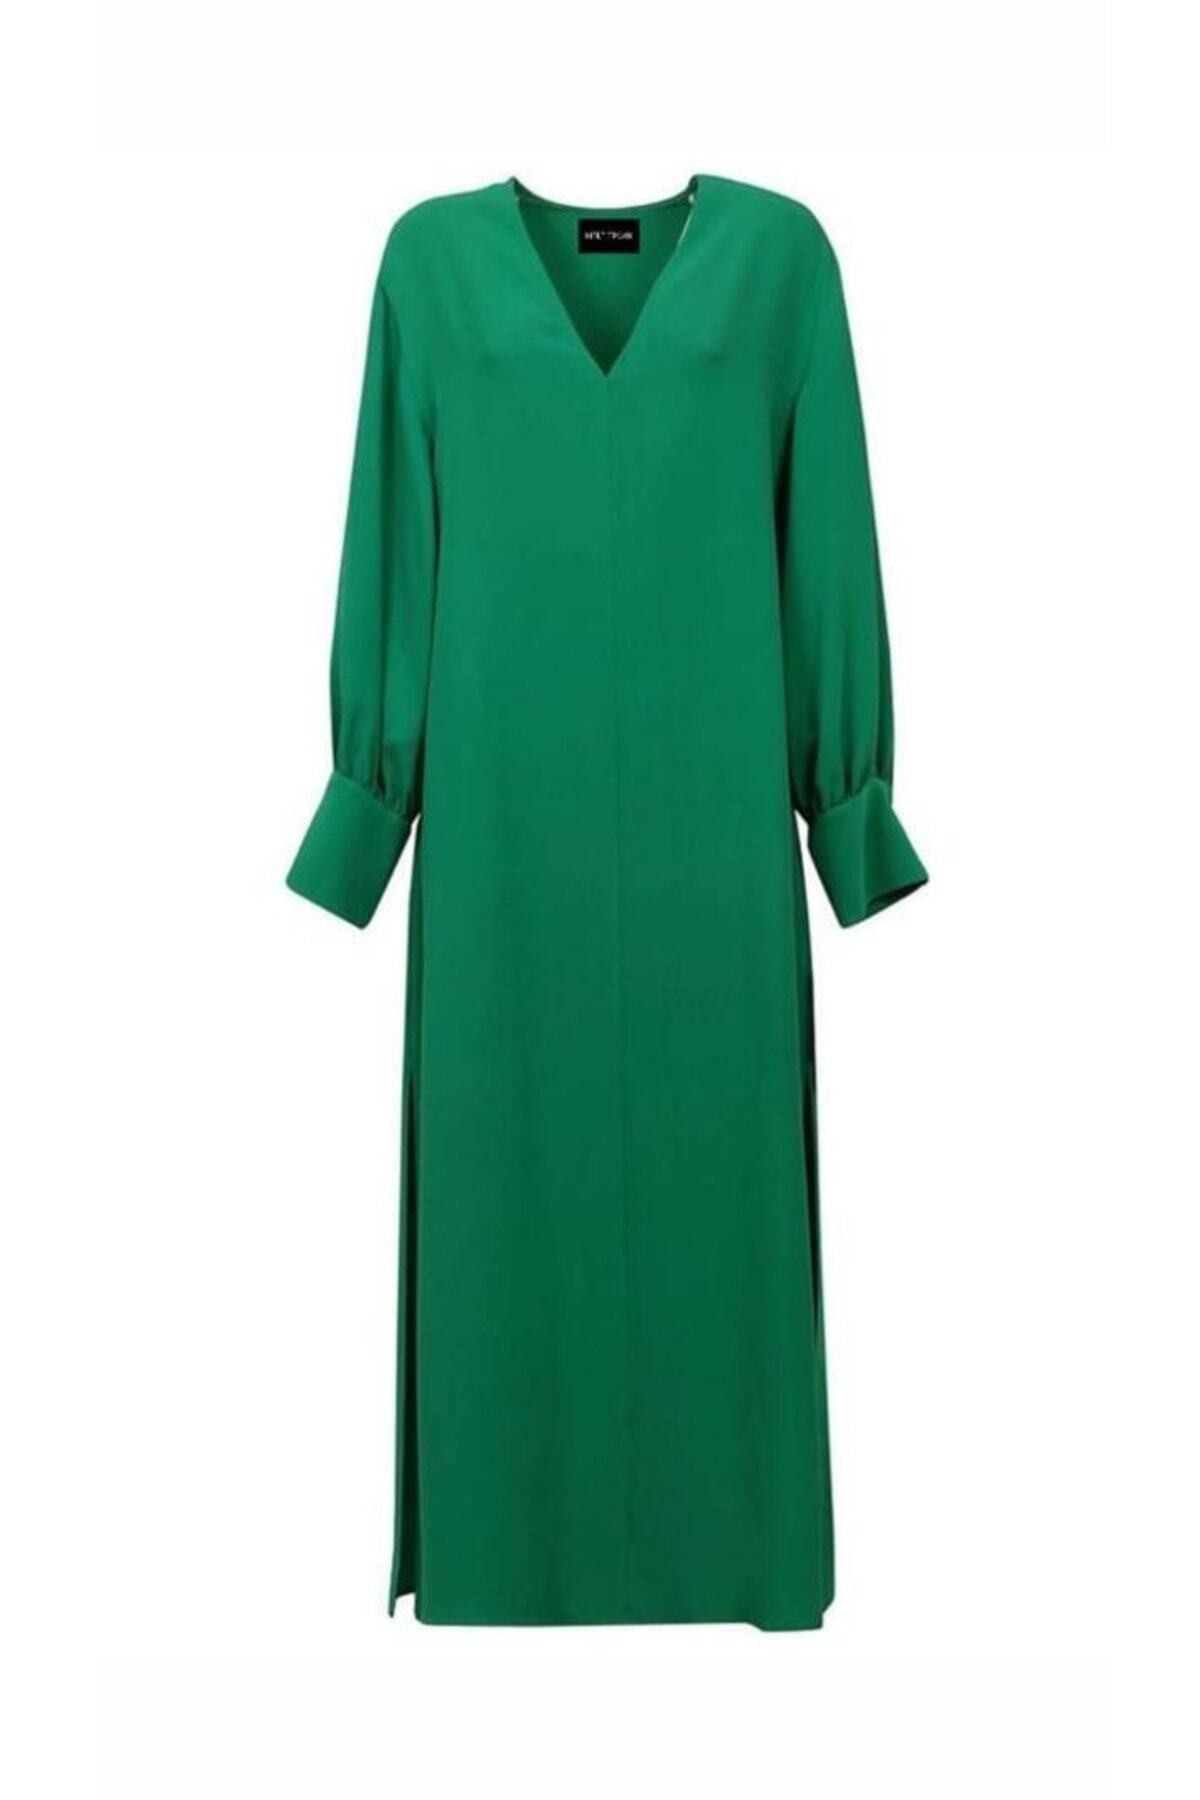 Mert Erkan V-yakalı Yeşil Düz & Yırtmaçlı Krep Elbise